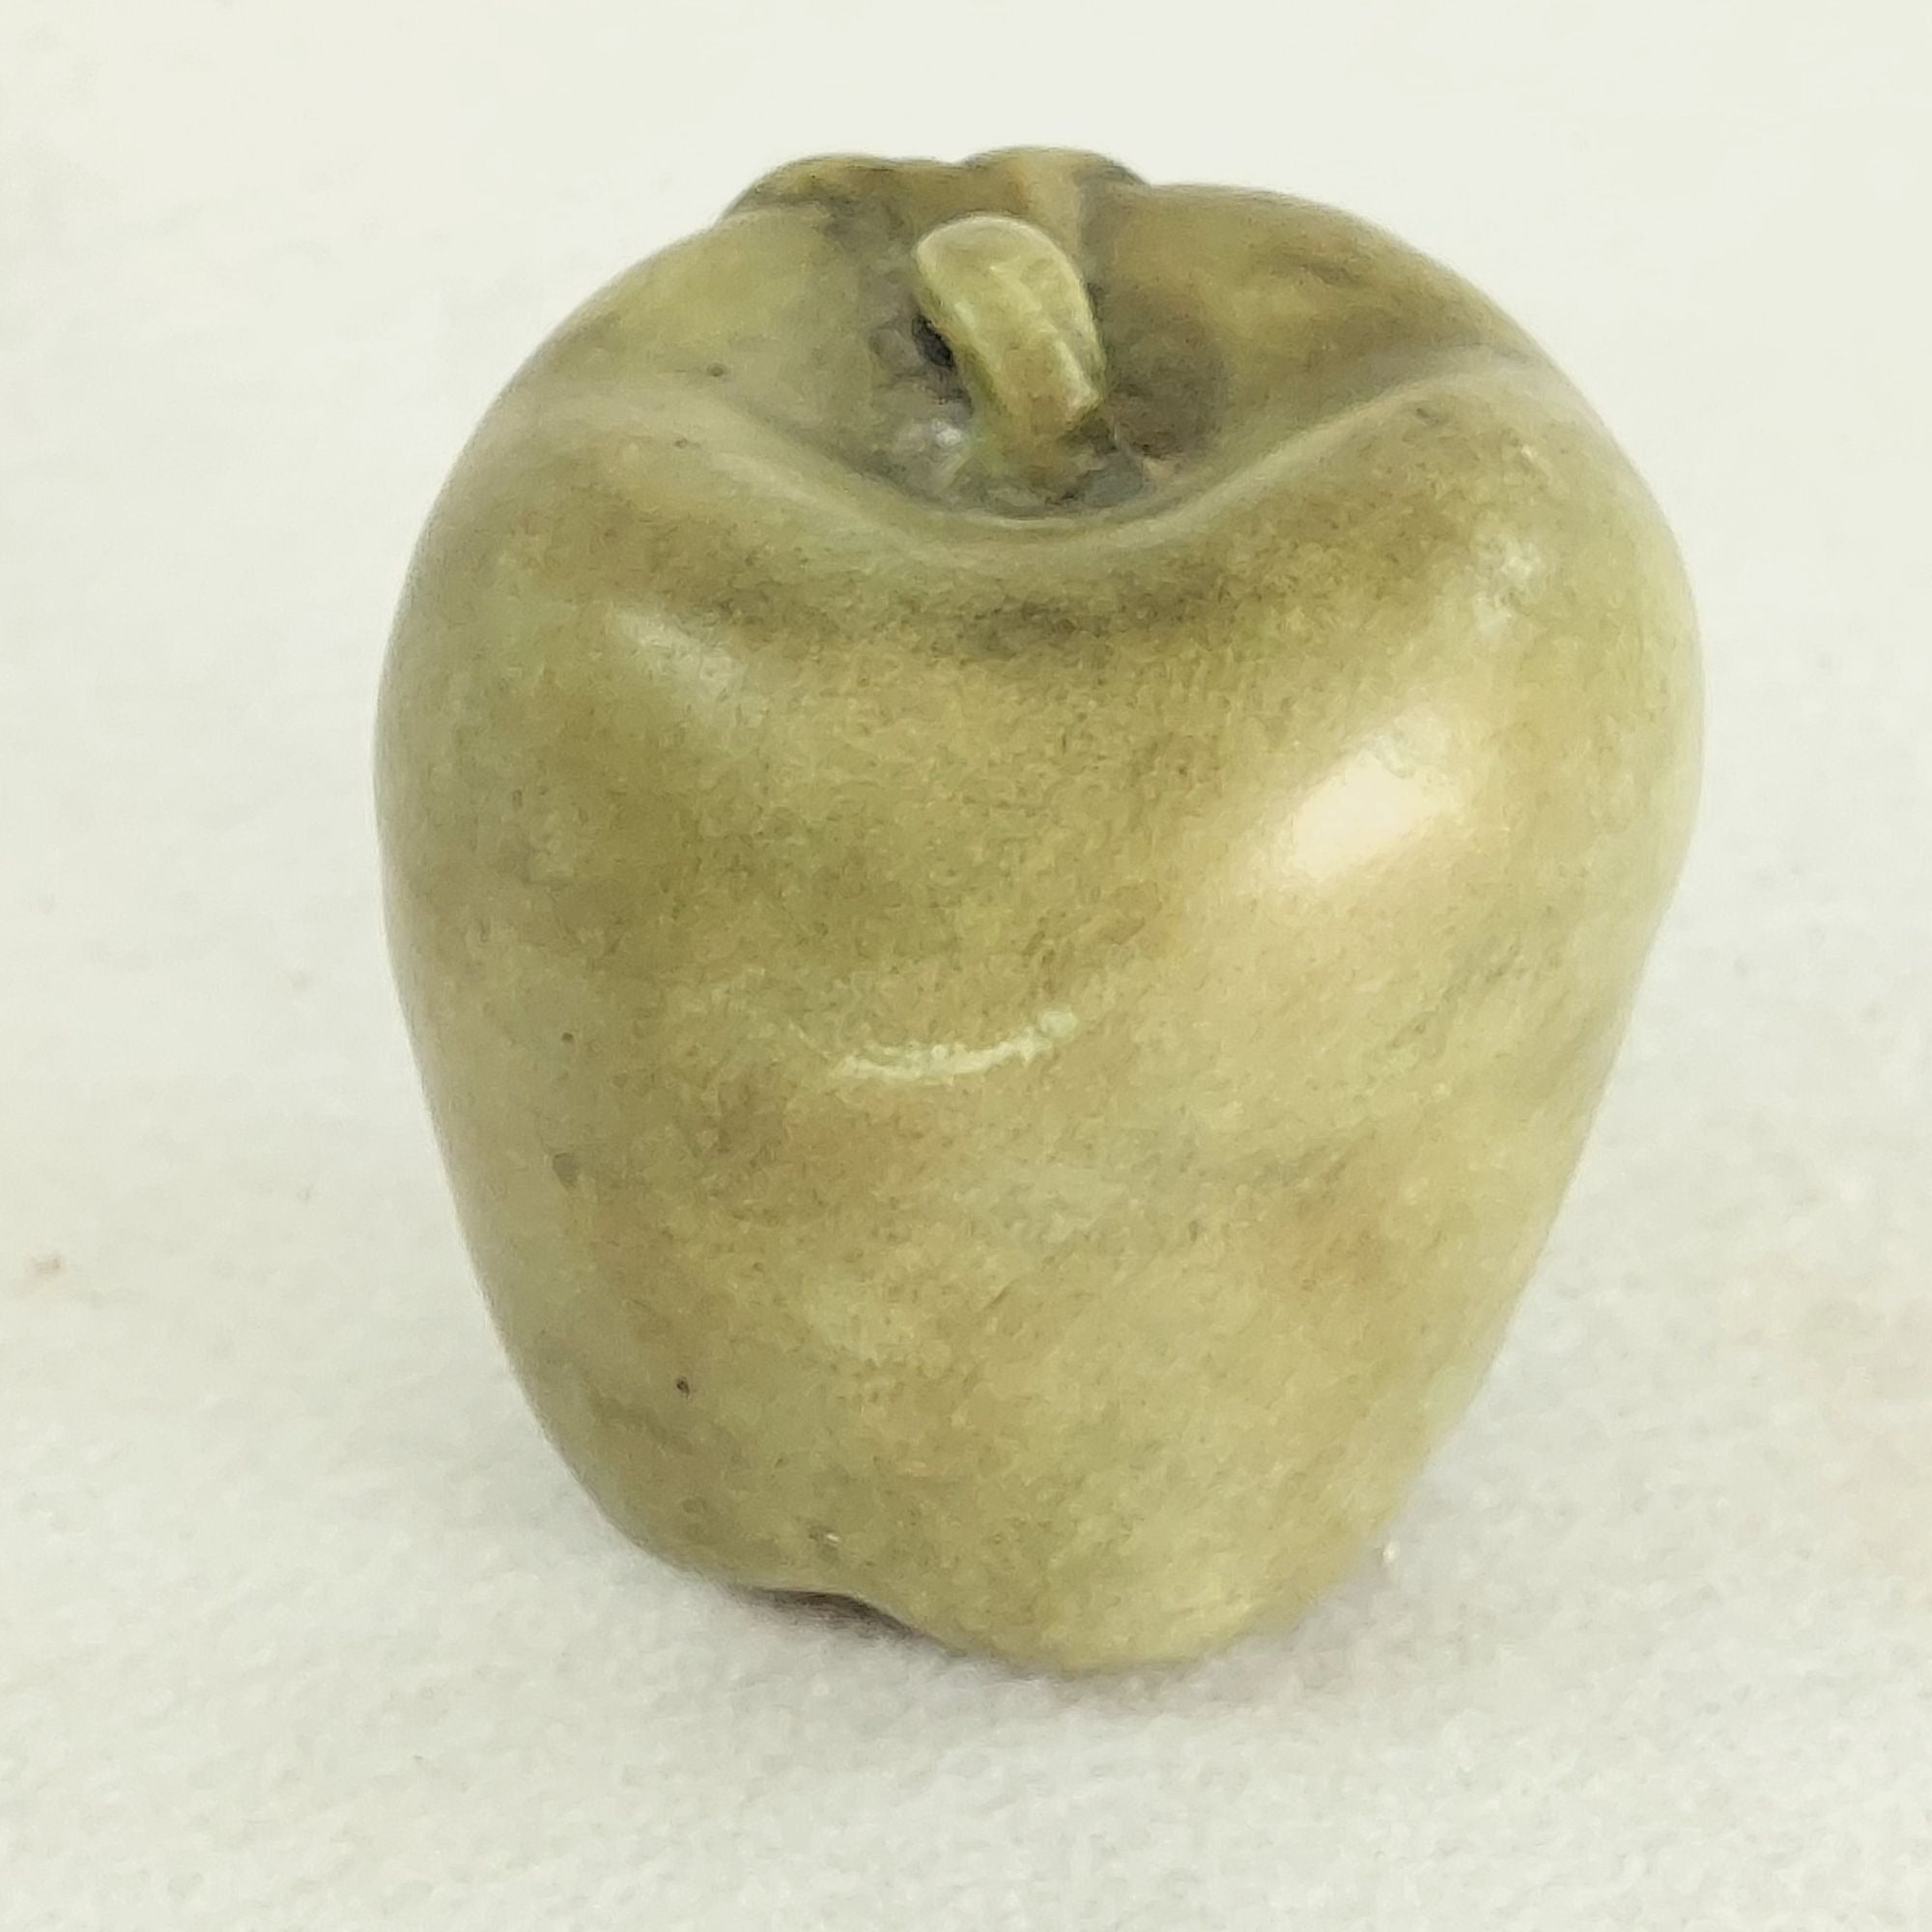 Faux Apple and Leaf Fruit Sage Green Ceramic Vintage Kitchen Home Decor 4"